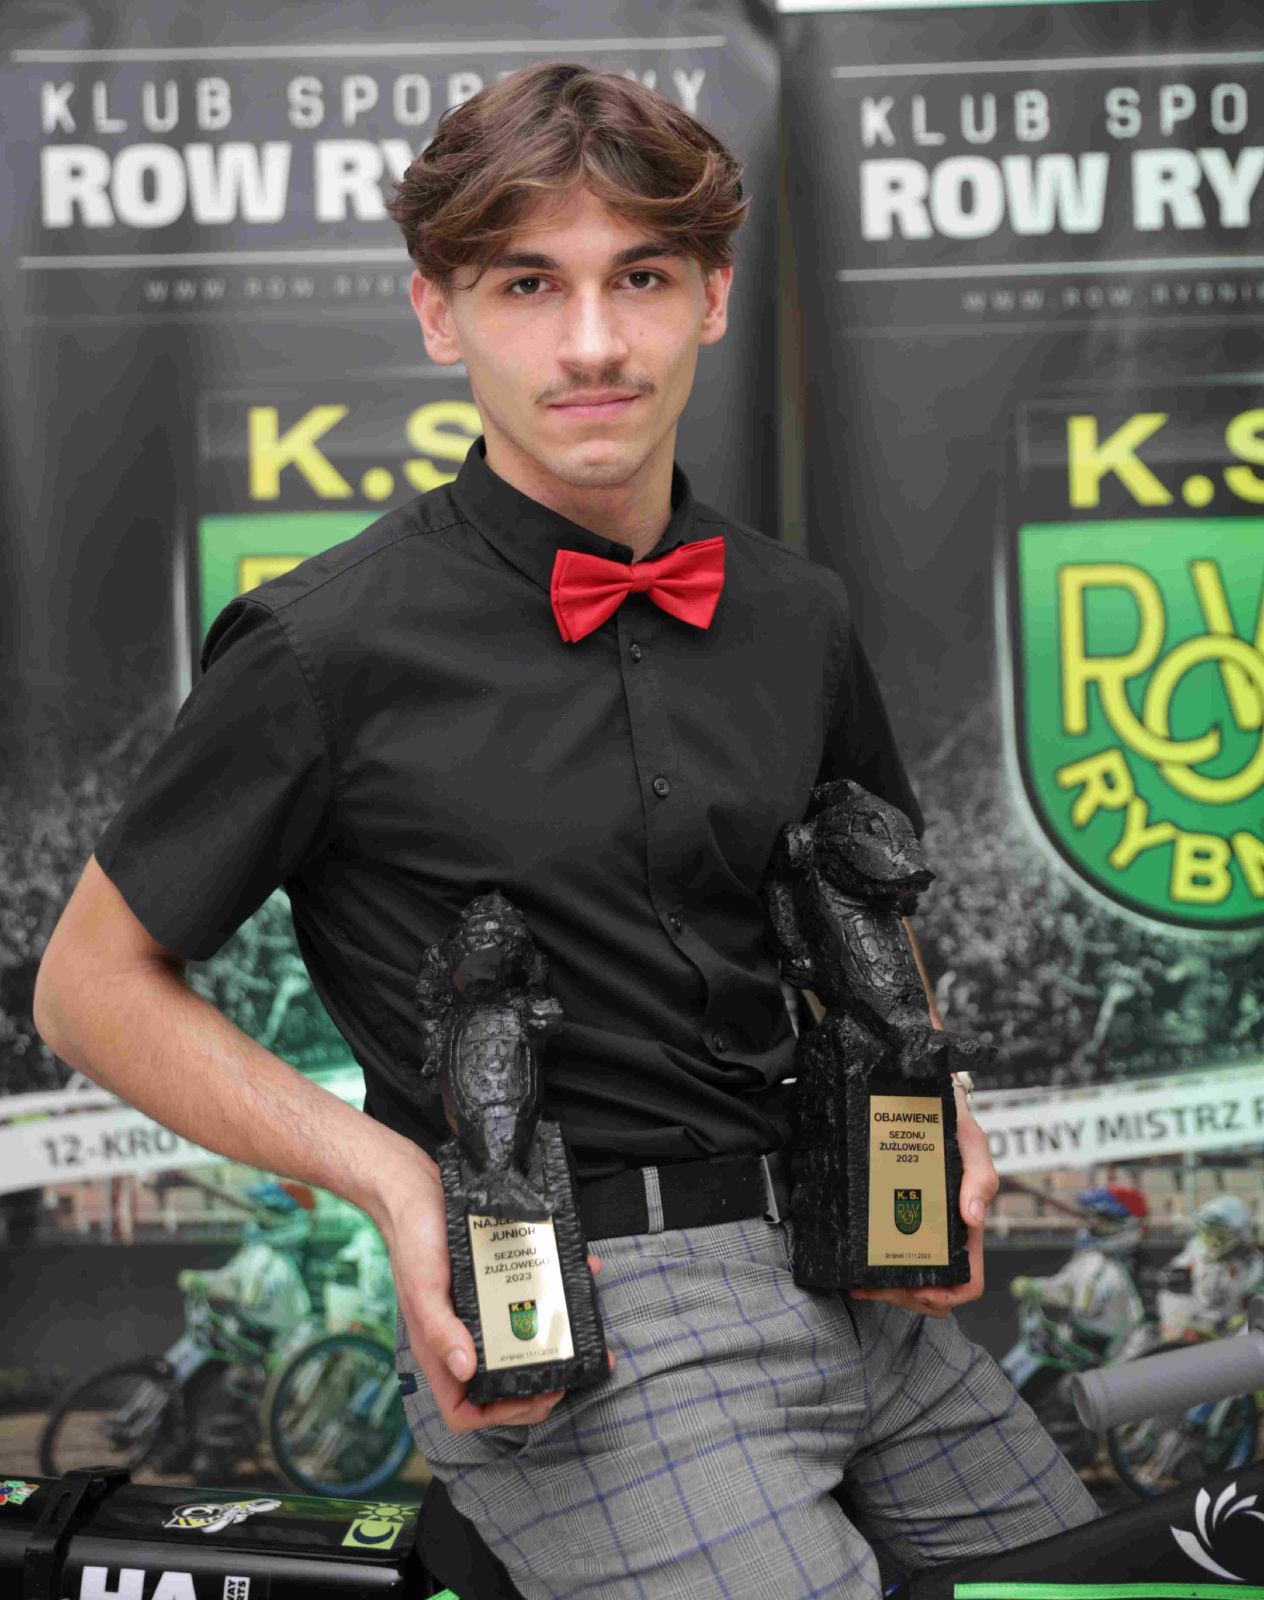 Za najpopularniejszego juniora i za objawienie sezonu uczestnicy klubowego plebiscytu uznali 18-letniego juniora Kacpra Tkocza